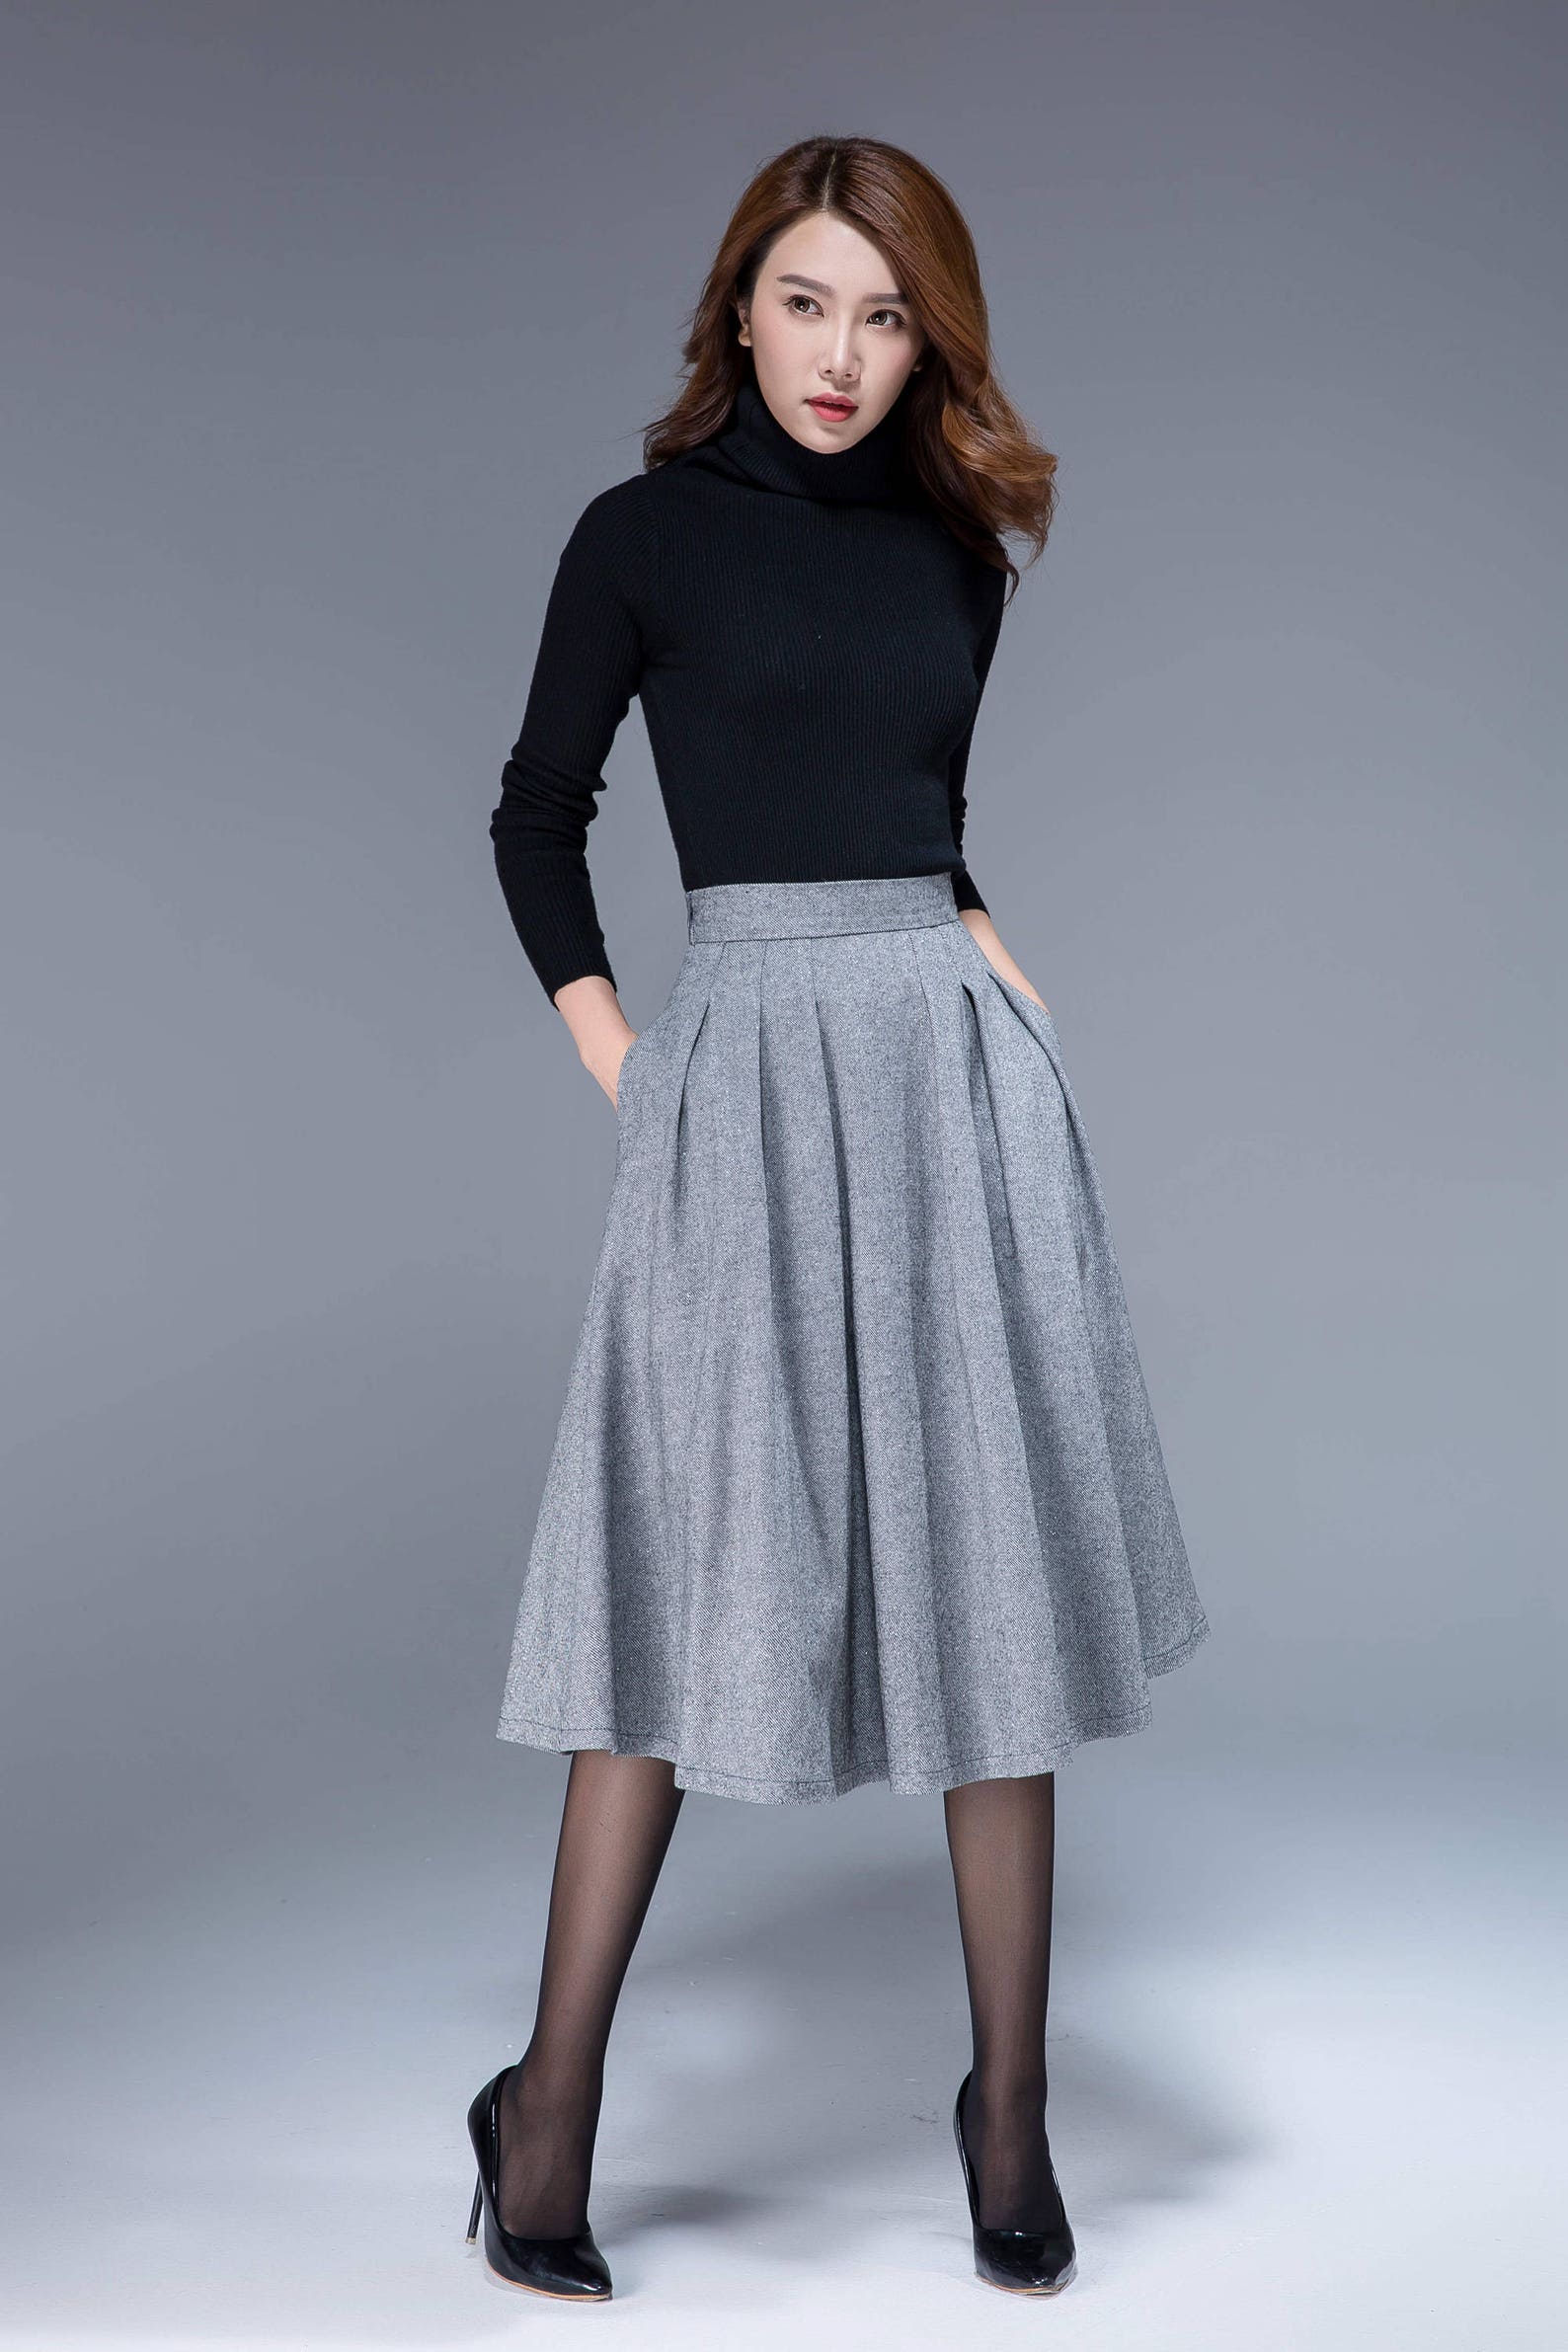 Pleated midi skirt Wool skirt Winter skirt Knee length | Etsy